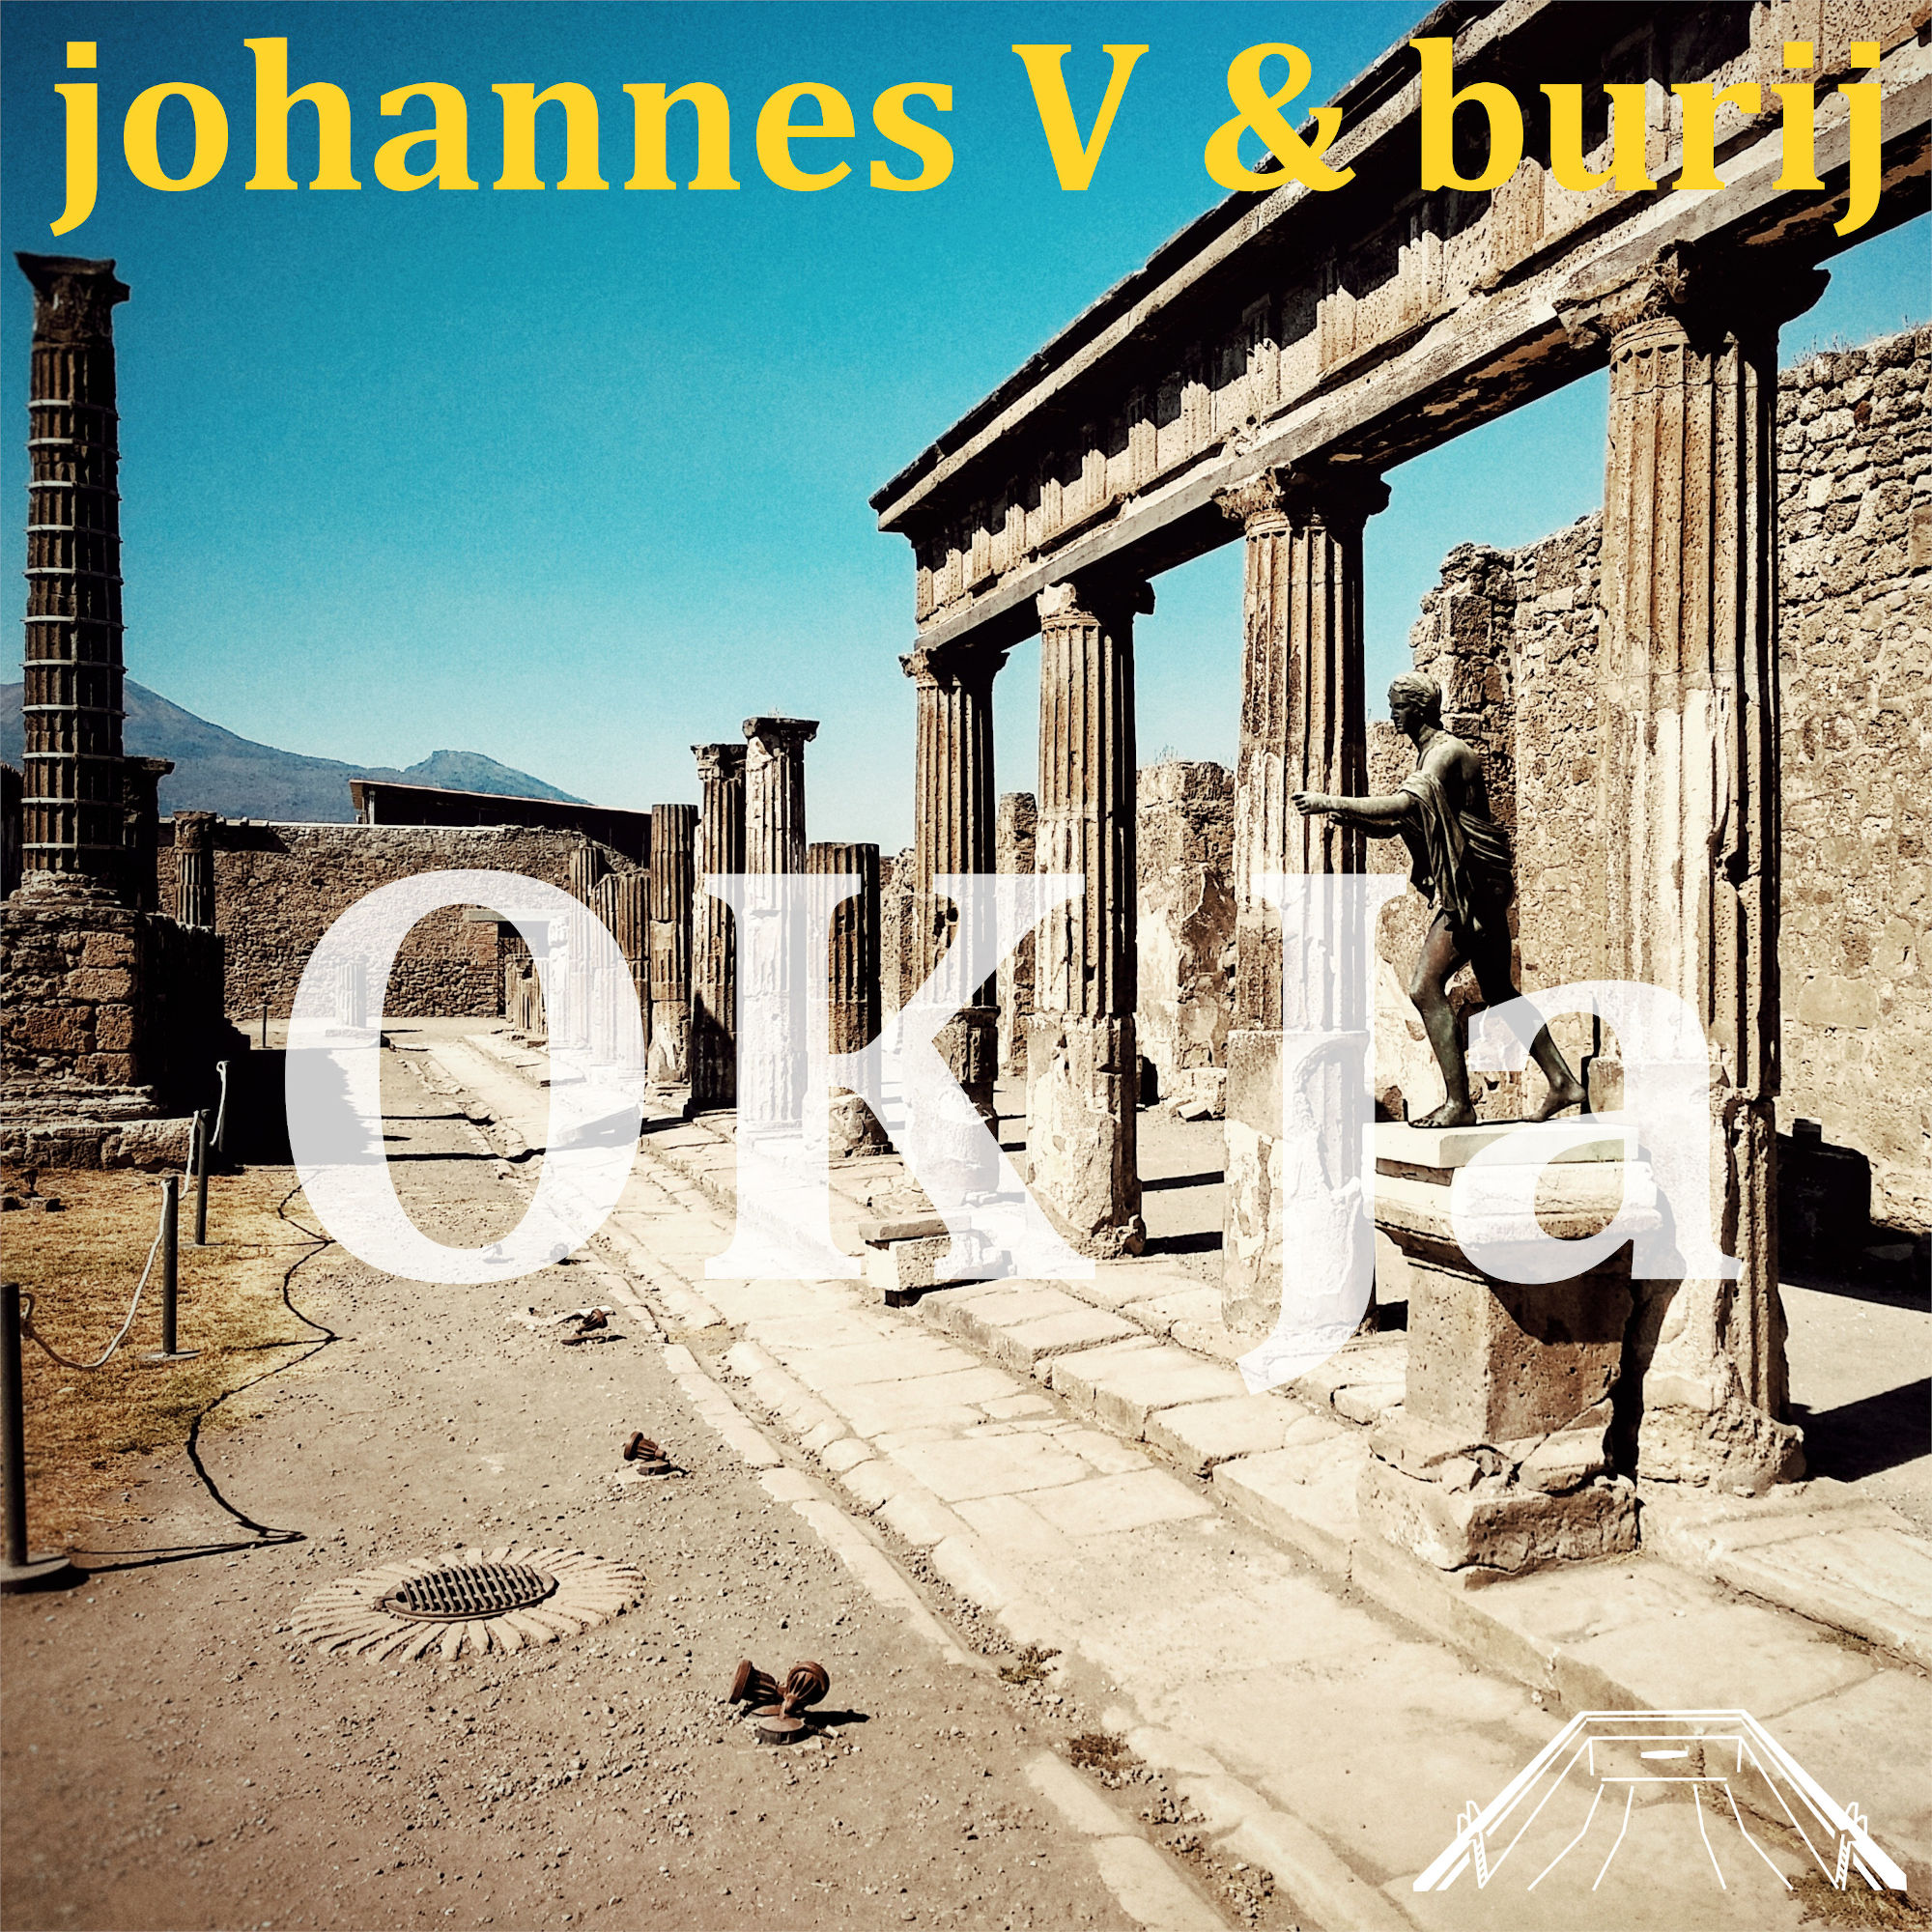 johannes V & burij – OK Ja (original mix)